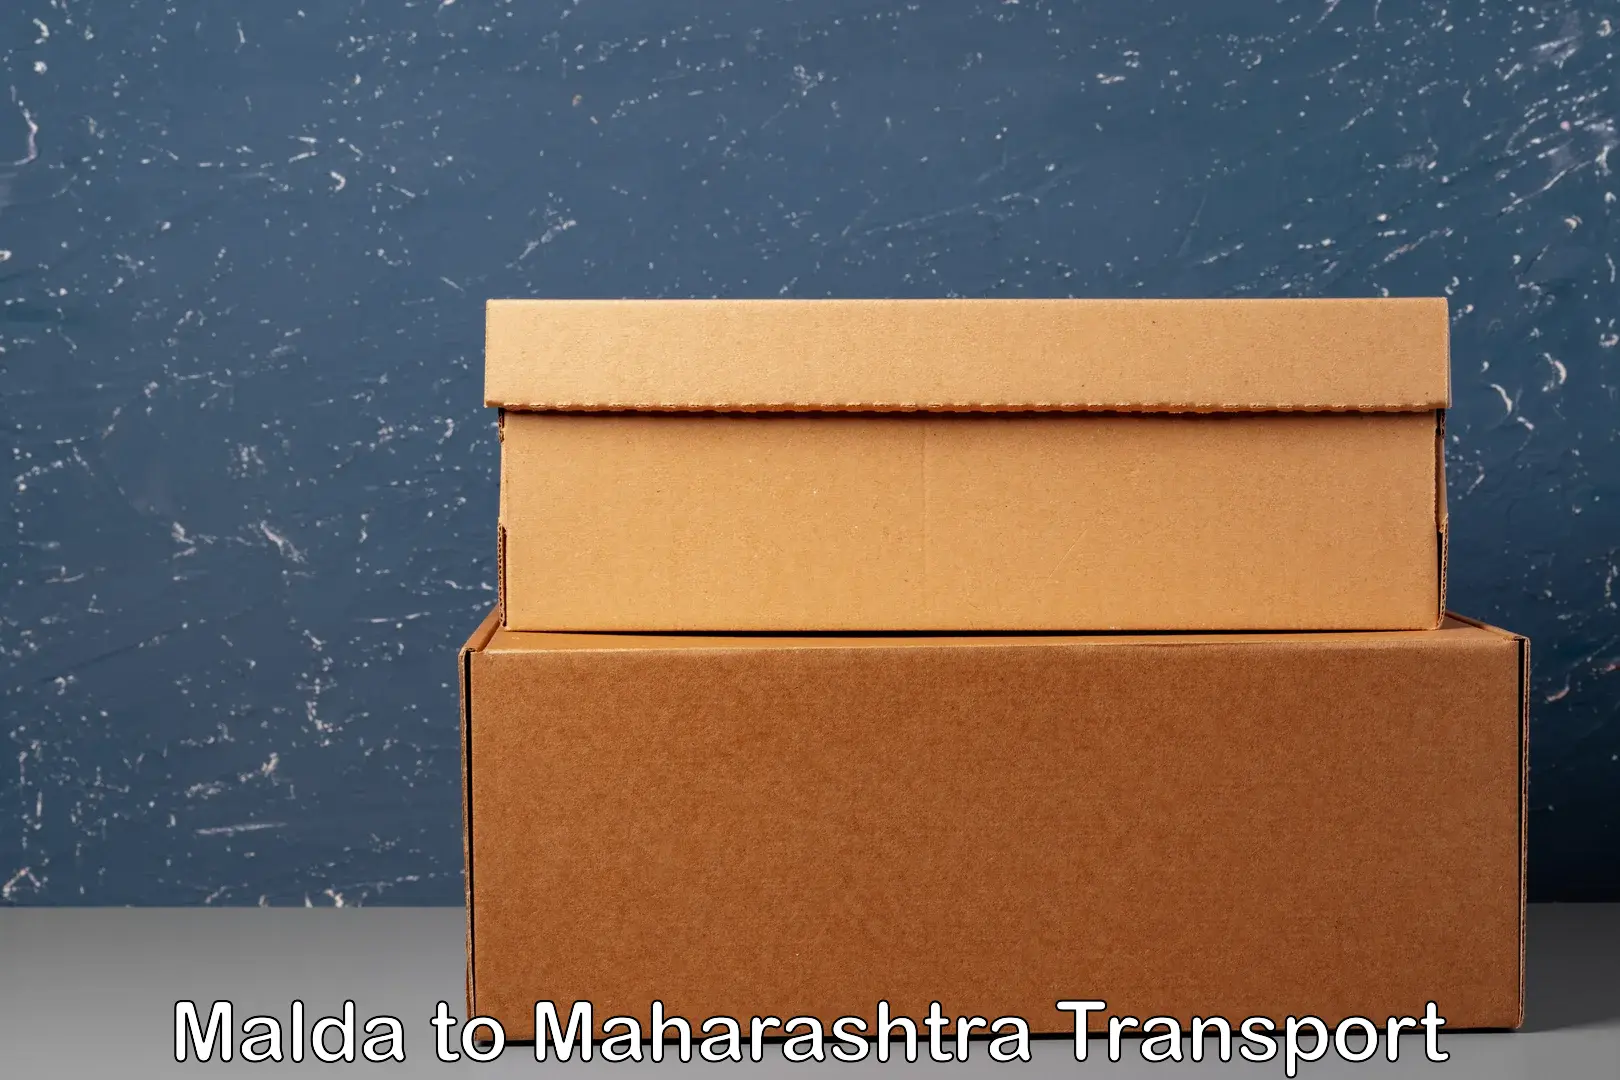 Interstate transport services Malda to Dusarbid